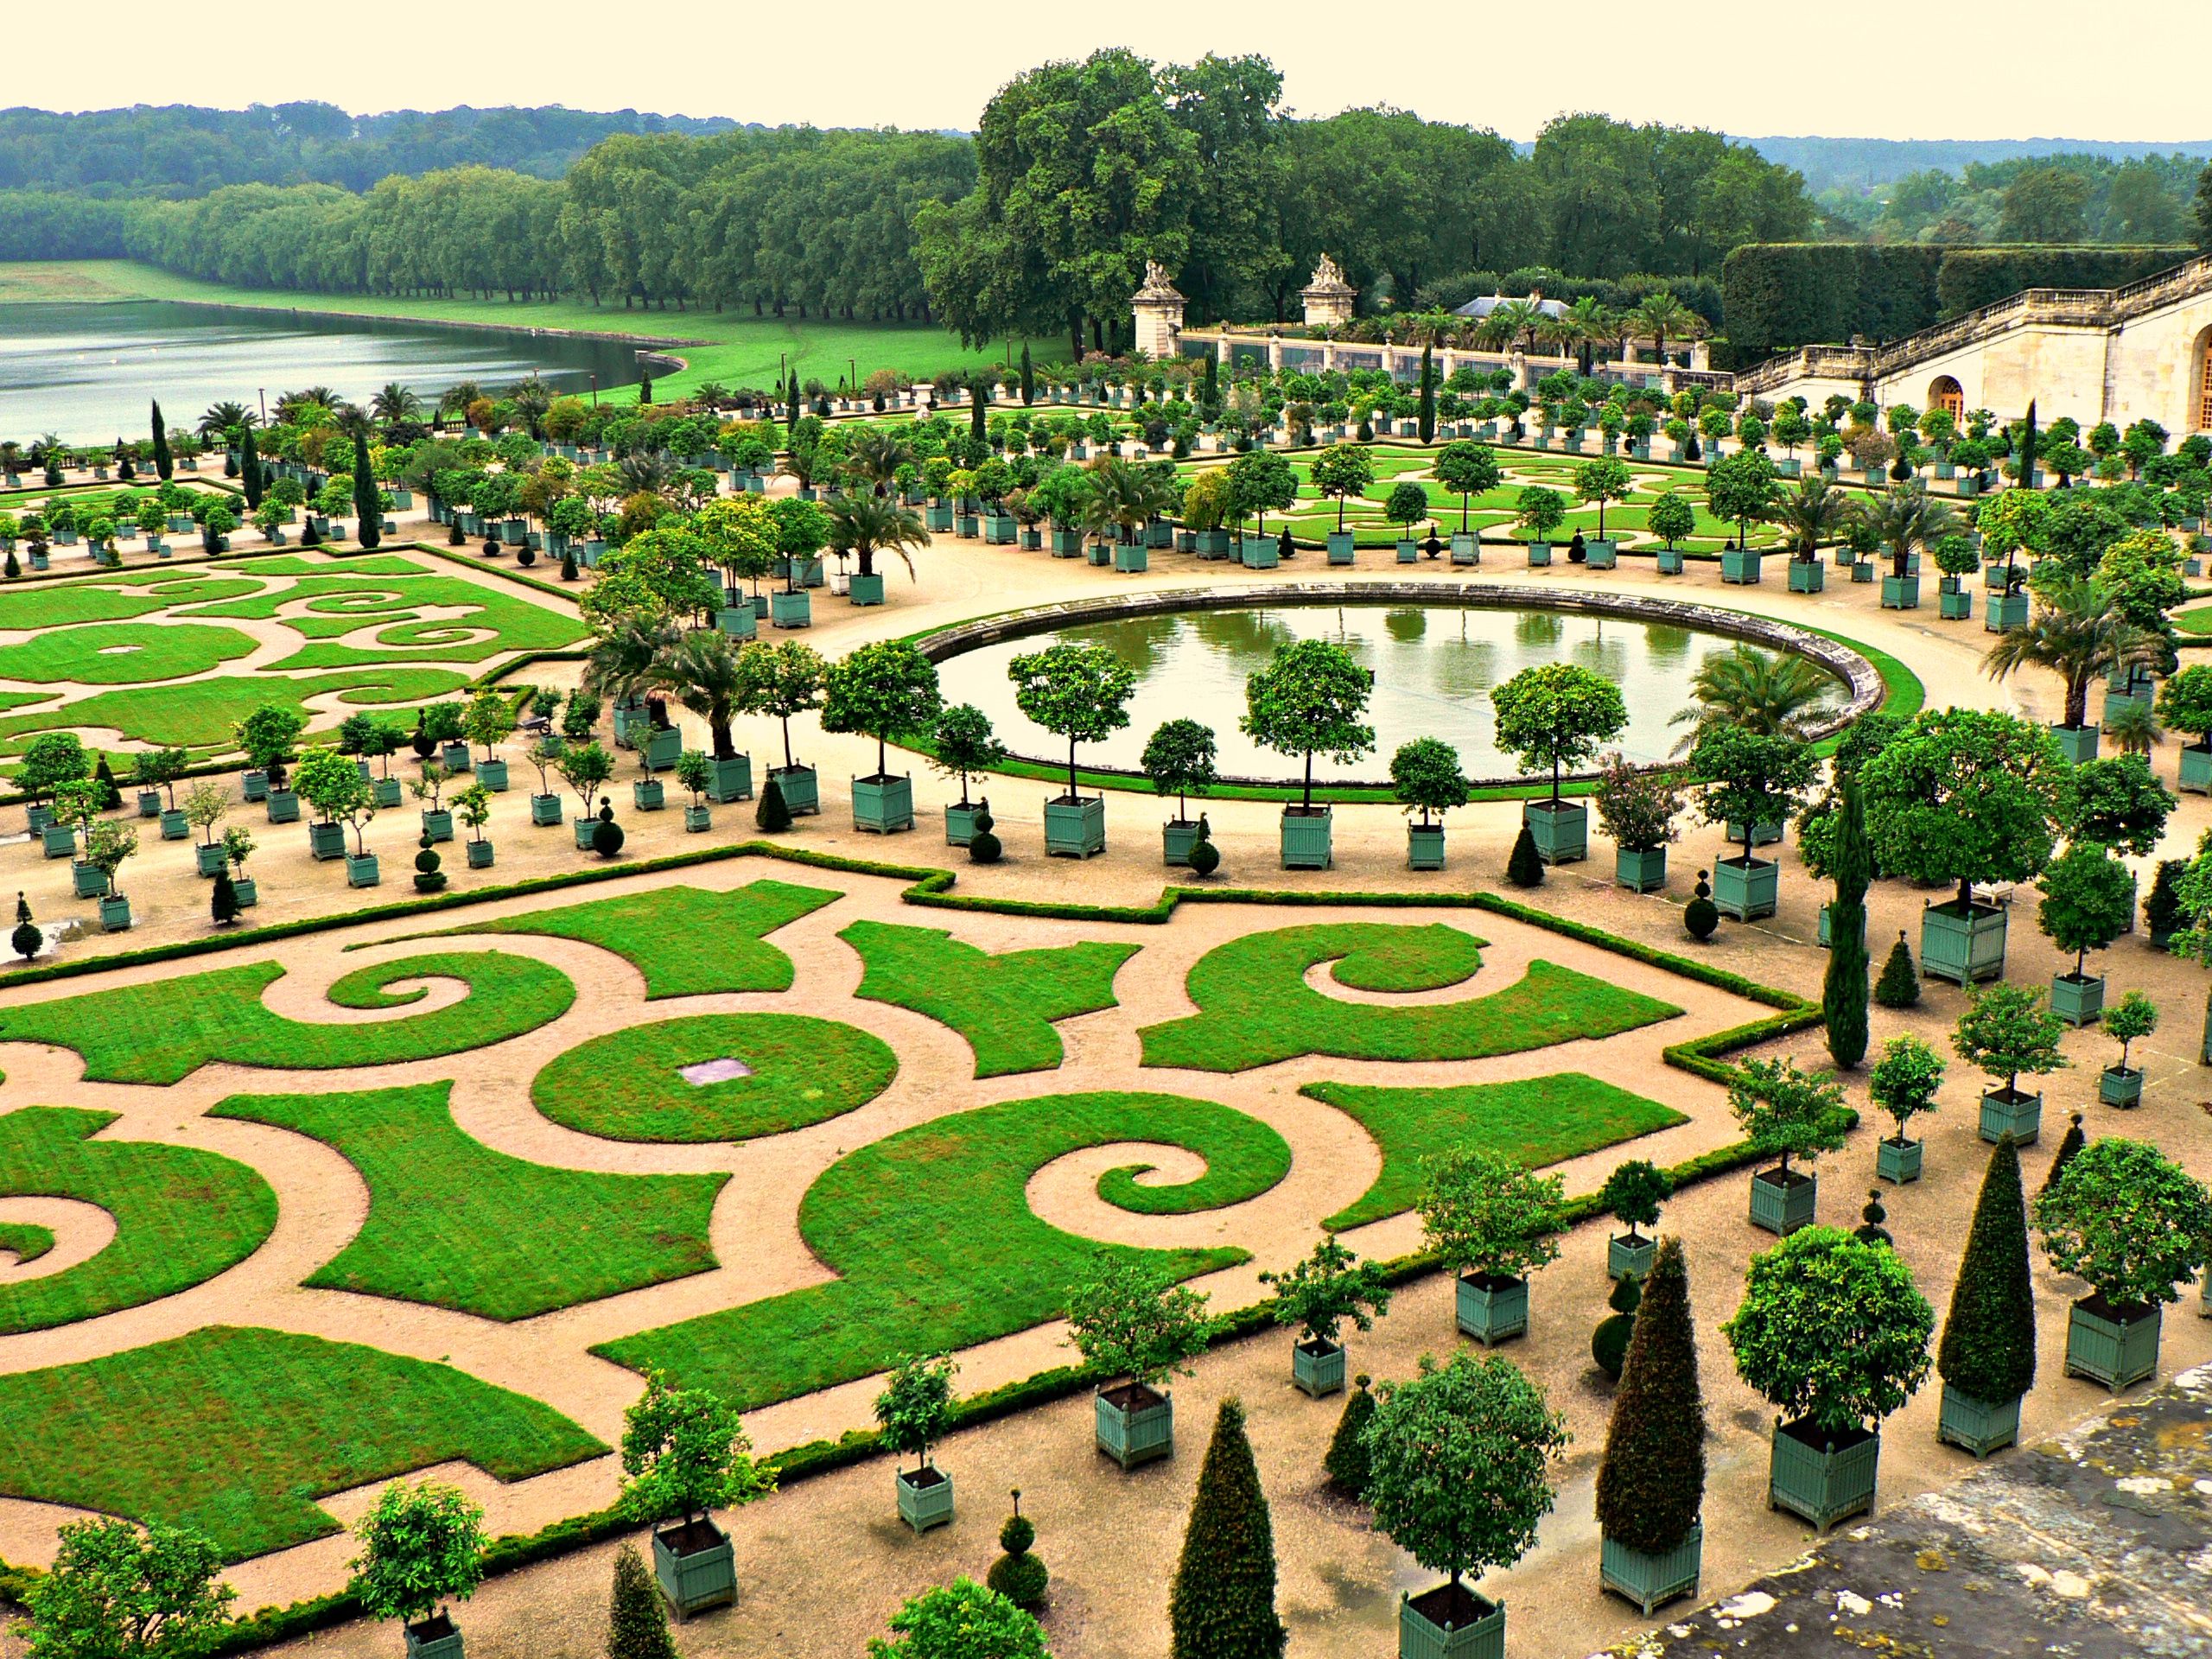 Versailles Garden